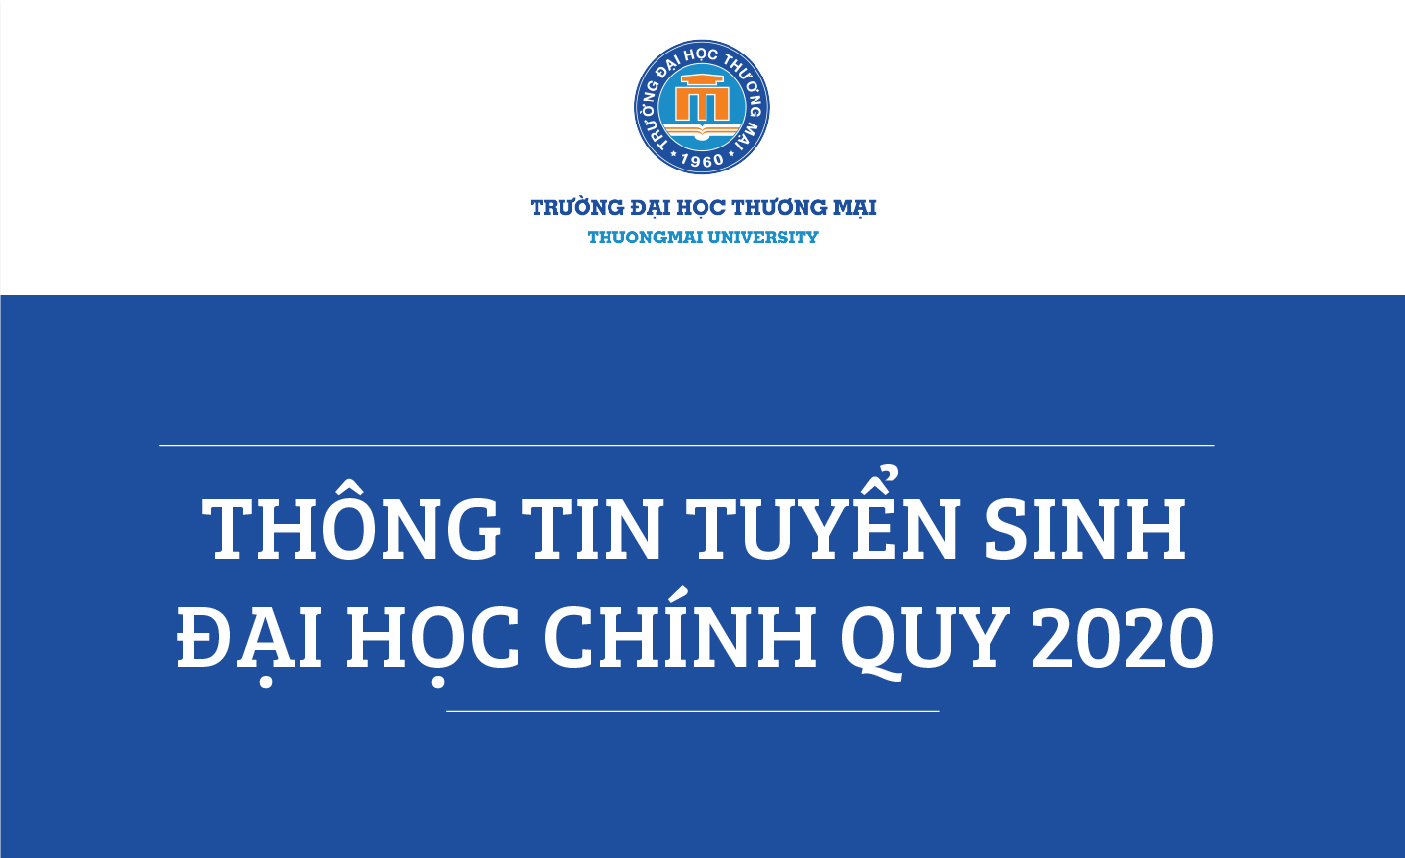 THÔNG TIN TUYỂN SINH Năm 2020 - Ngành Thương mại điện tử và Ngành Hệ thống thông tin quản lý - Trường Đại học Thương Mại